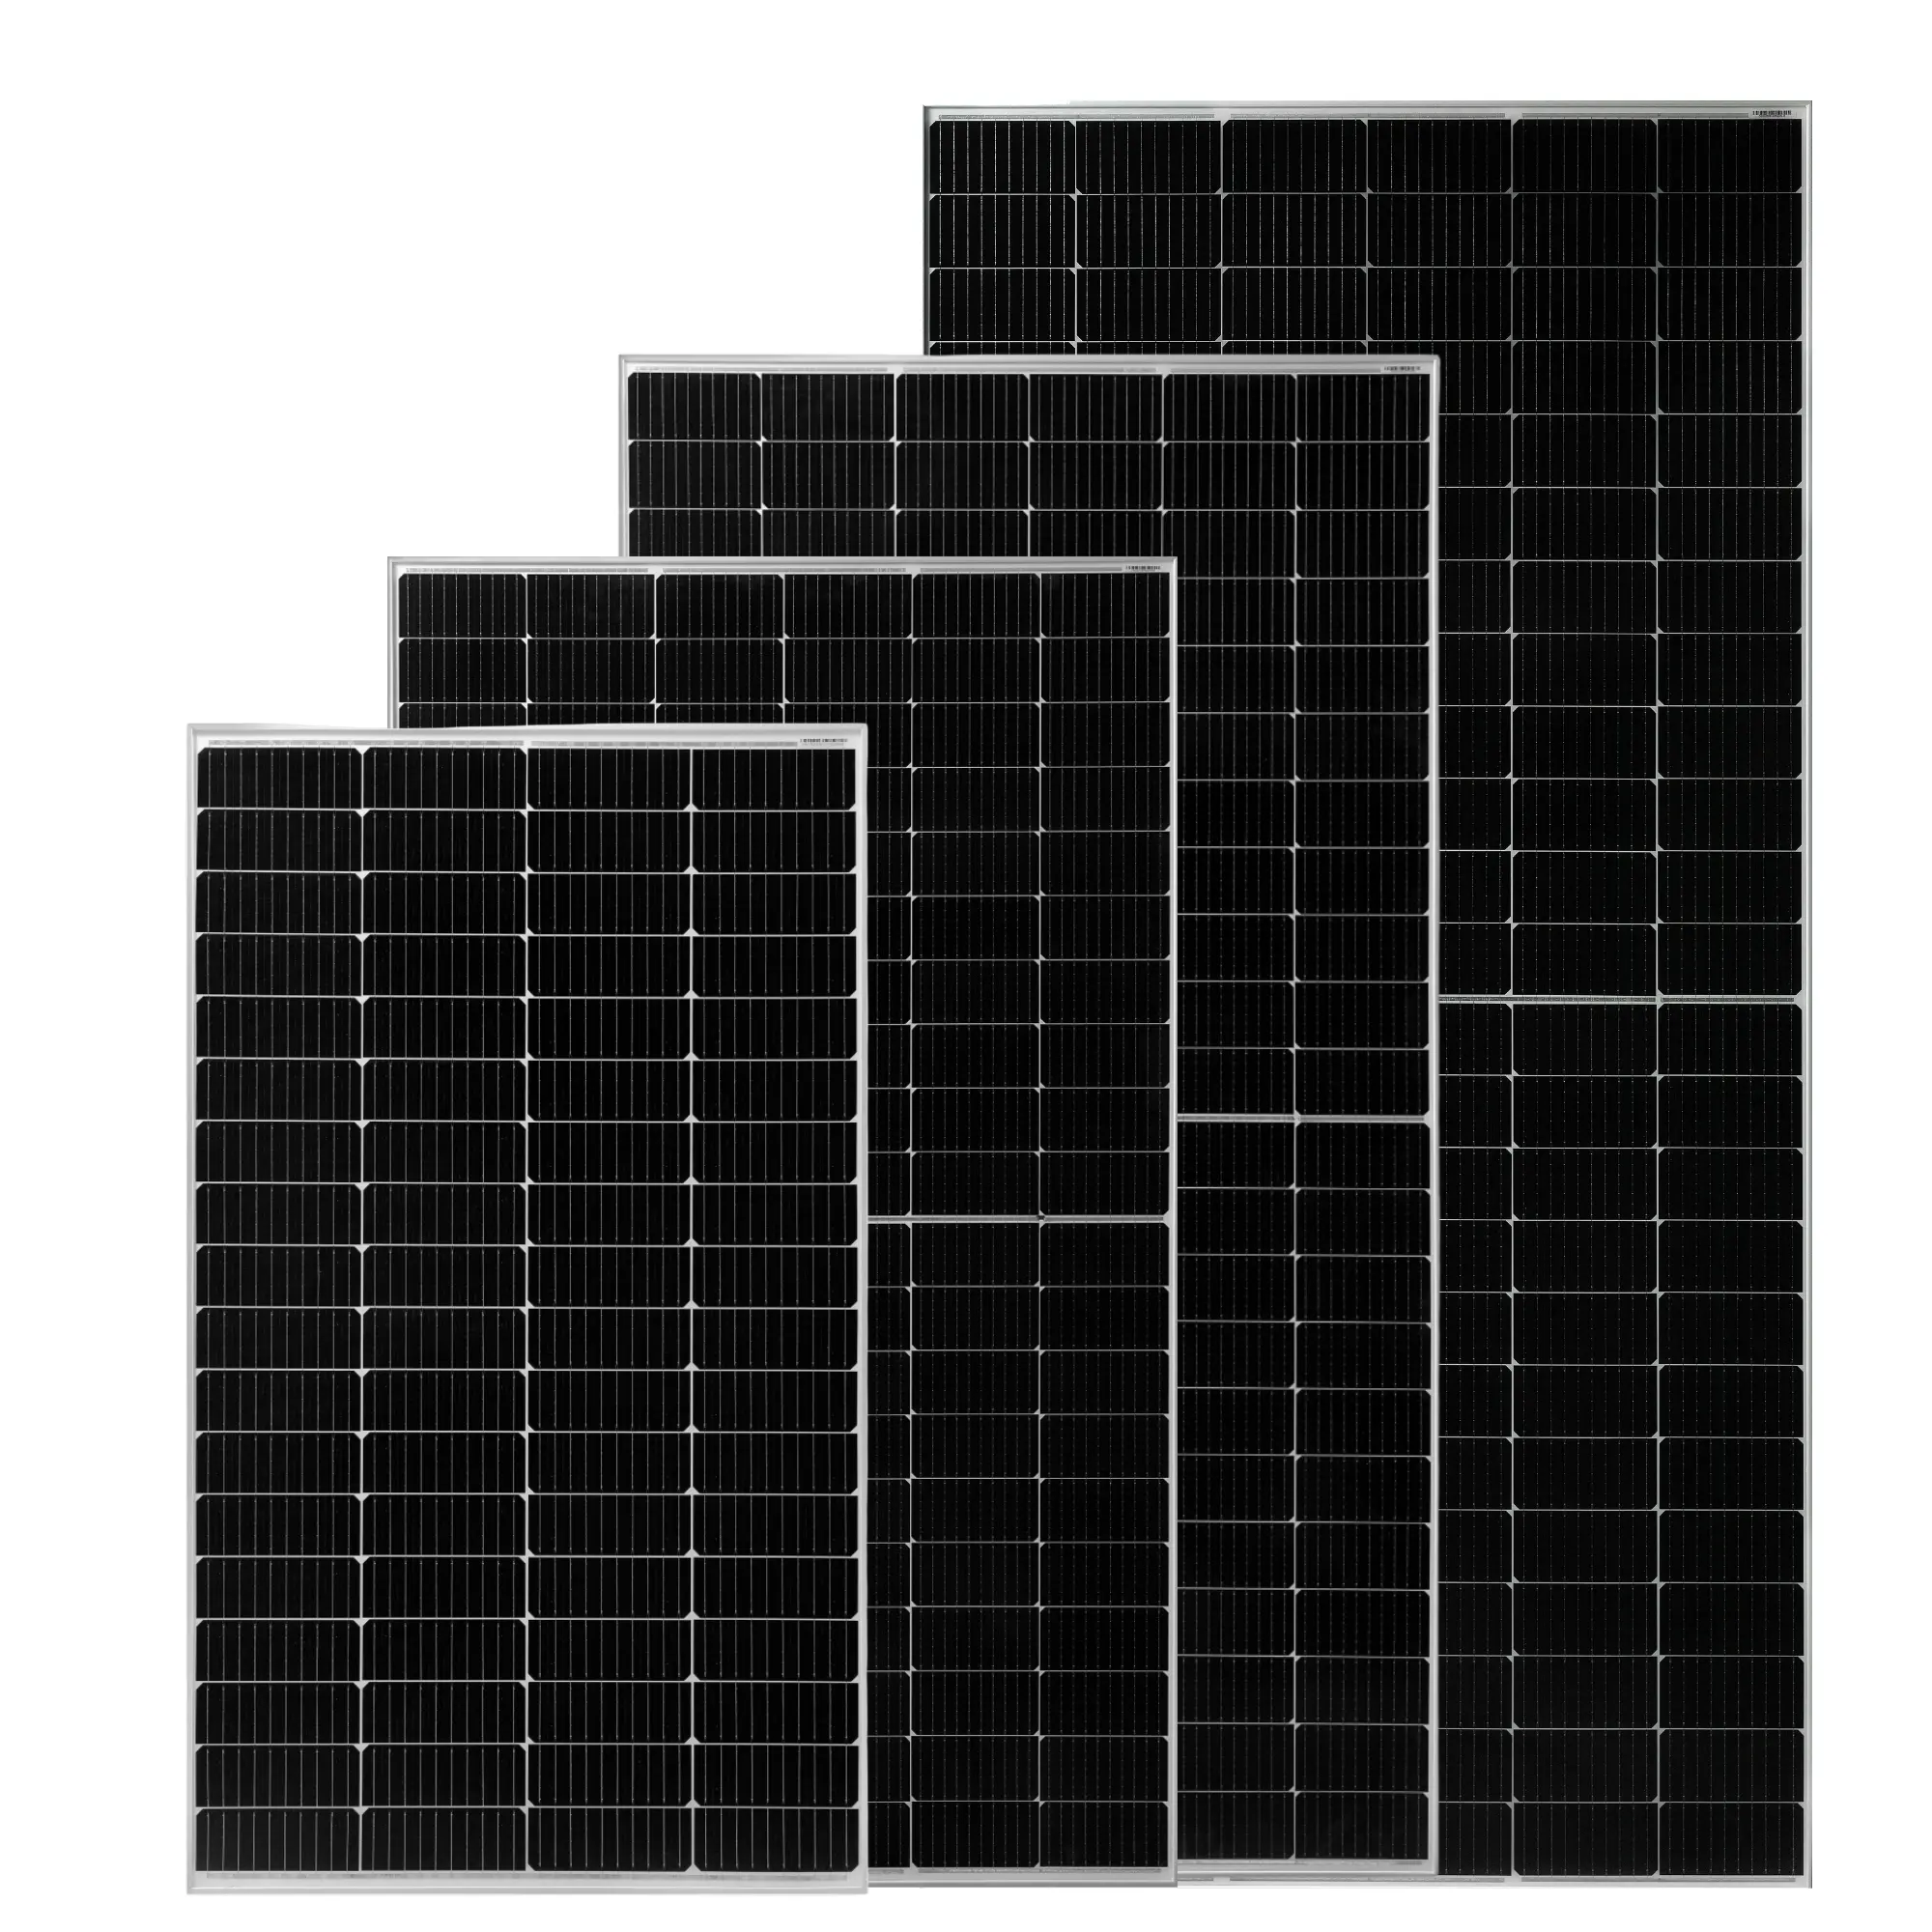 لوحات شمسية للأسقف للمنازل والمزرعات وات صغير وكبير 80 وات 90 وات 100 وات 120 وات 150 وات 200 وات وحدات كهرضوئية أحادية سوداء 12 فولت 18 فولت 36 فولت